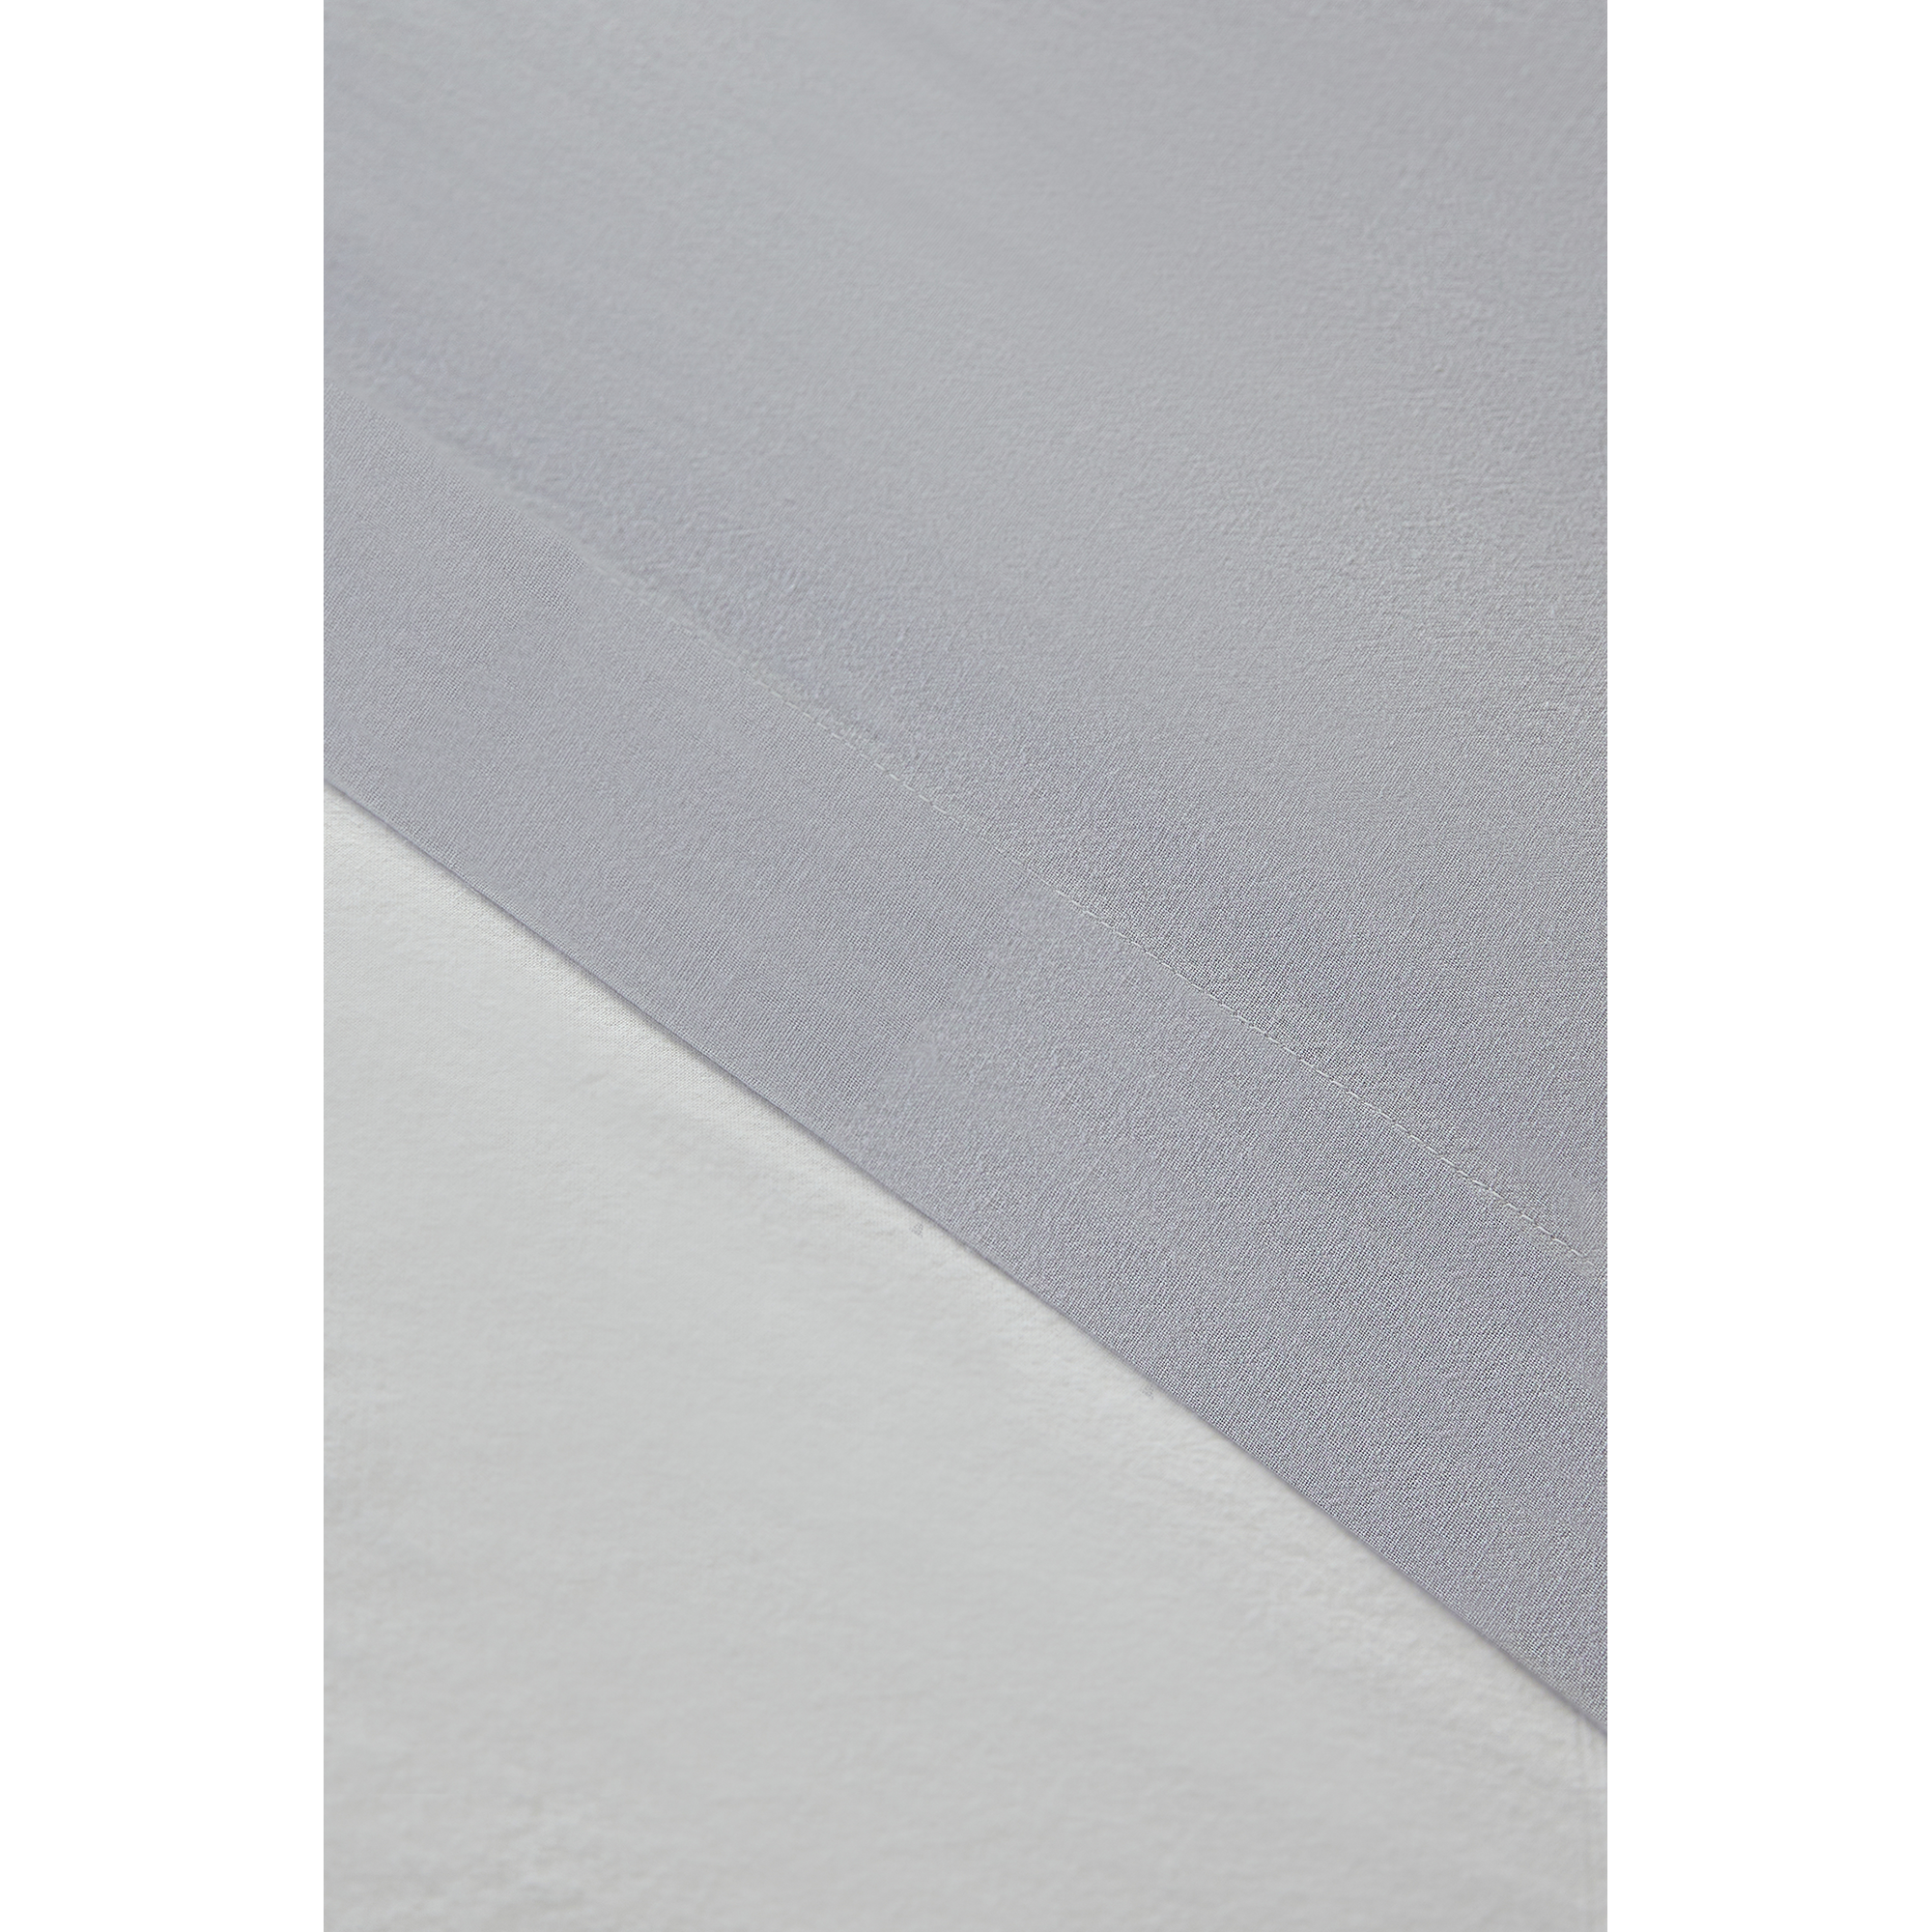 Torres Novas 1845 Dekbedovertrek Zilvergrijs - Lits Jumeaux - 240 x 220 cm (zonder slopen) - Gewassen Katoen